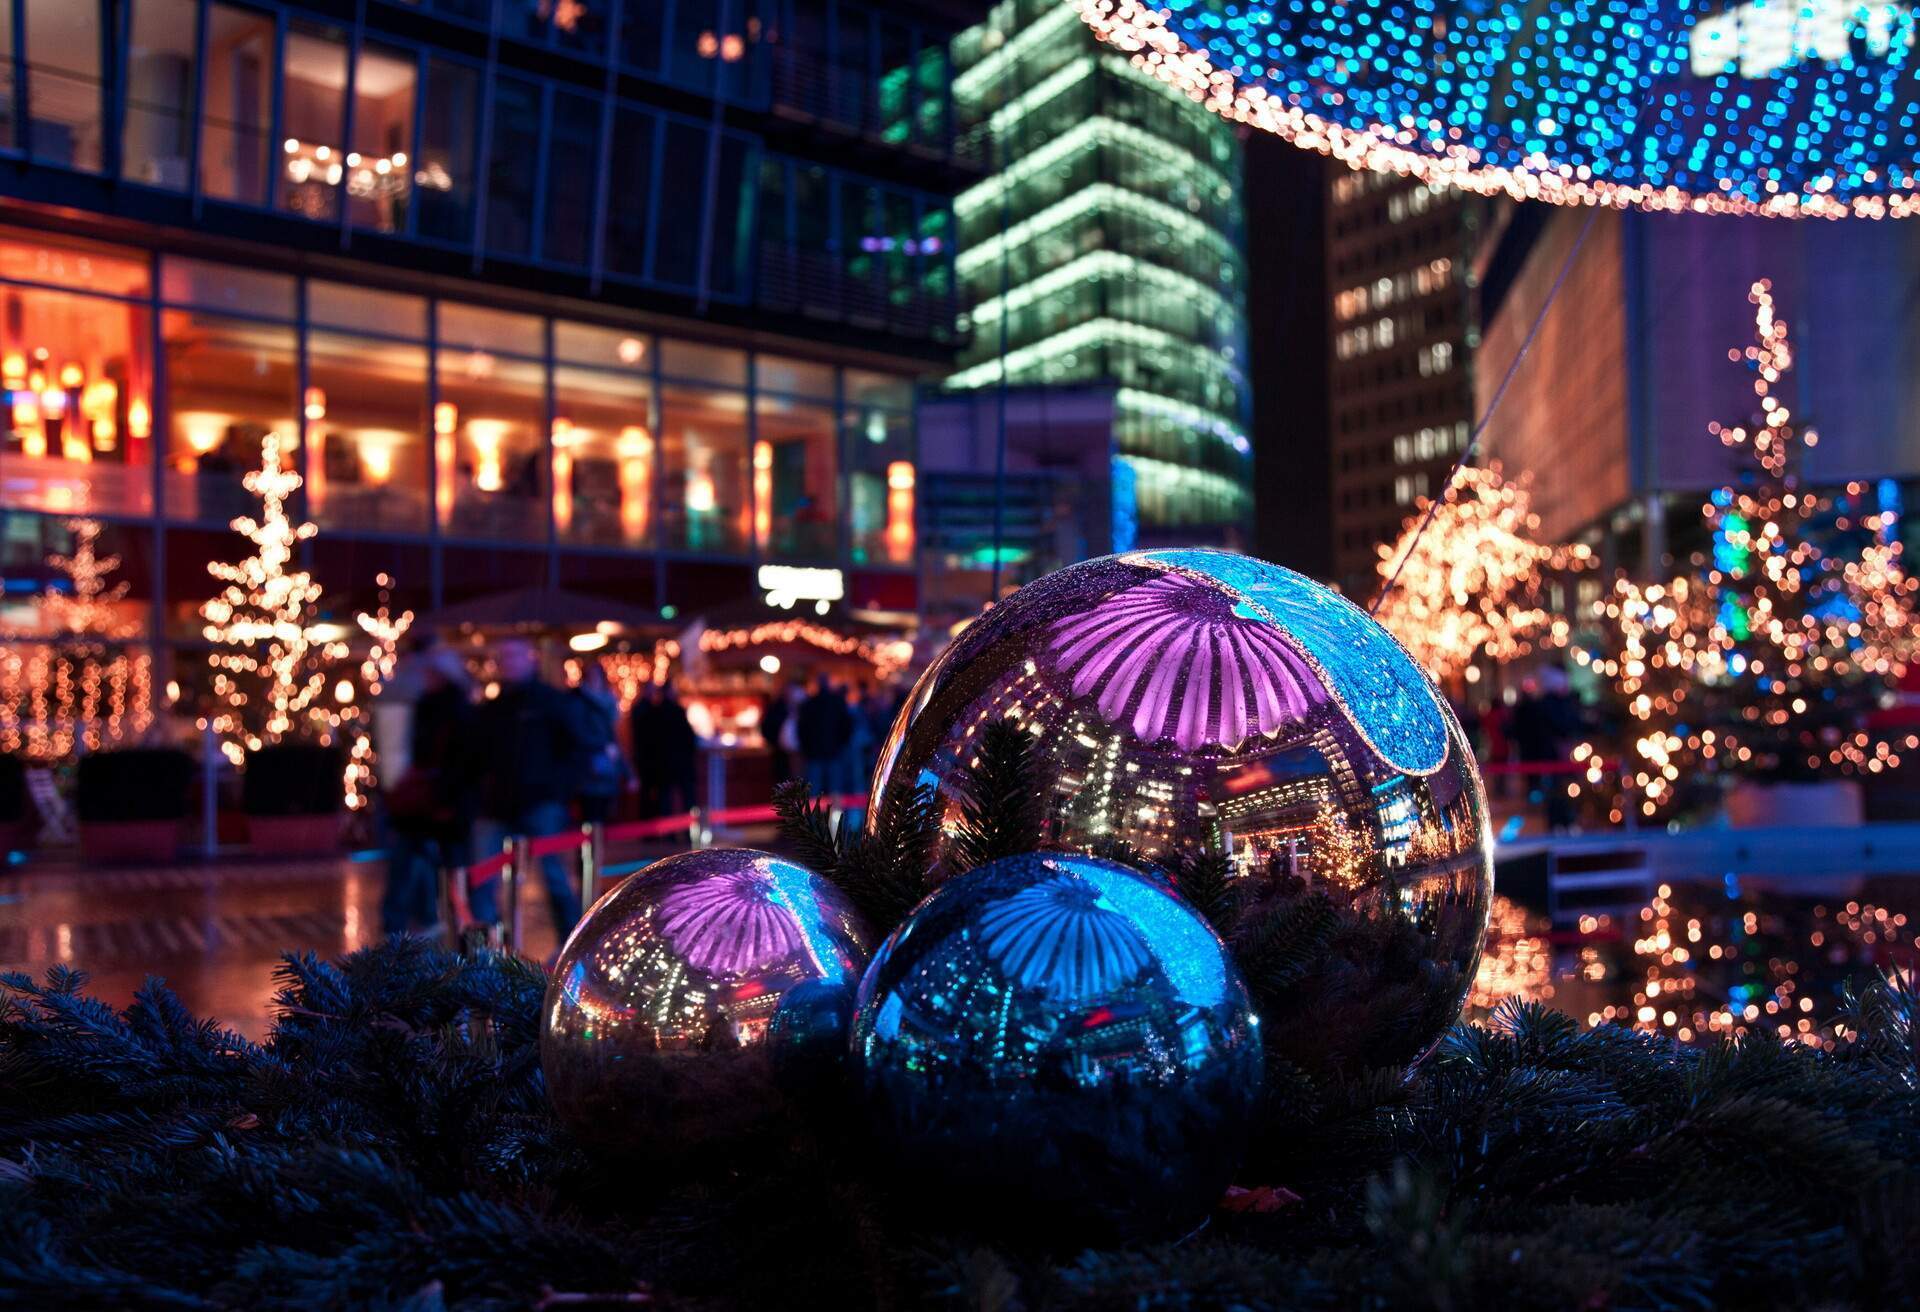 La splendide nuit du marché de Noël, illuminée dans le Sony Center de Berlin, où l'on aperçoit le marché qui se reflète dans les boules métallisées.